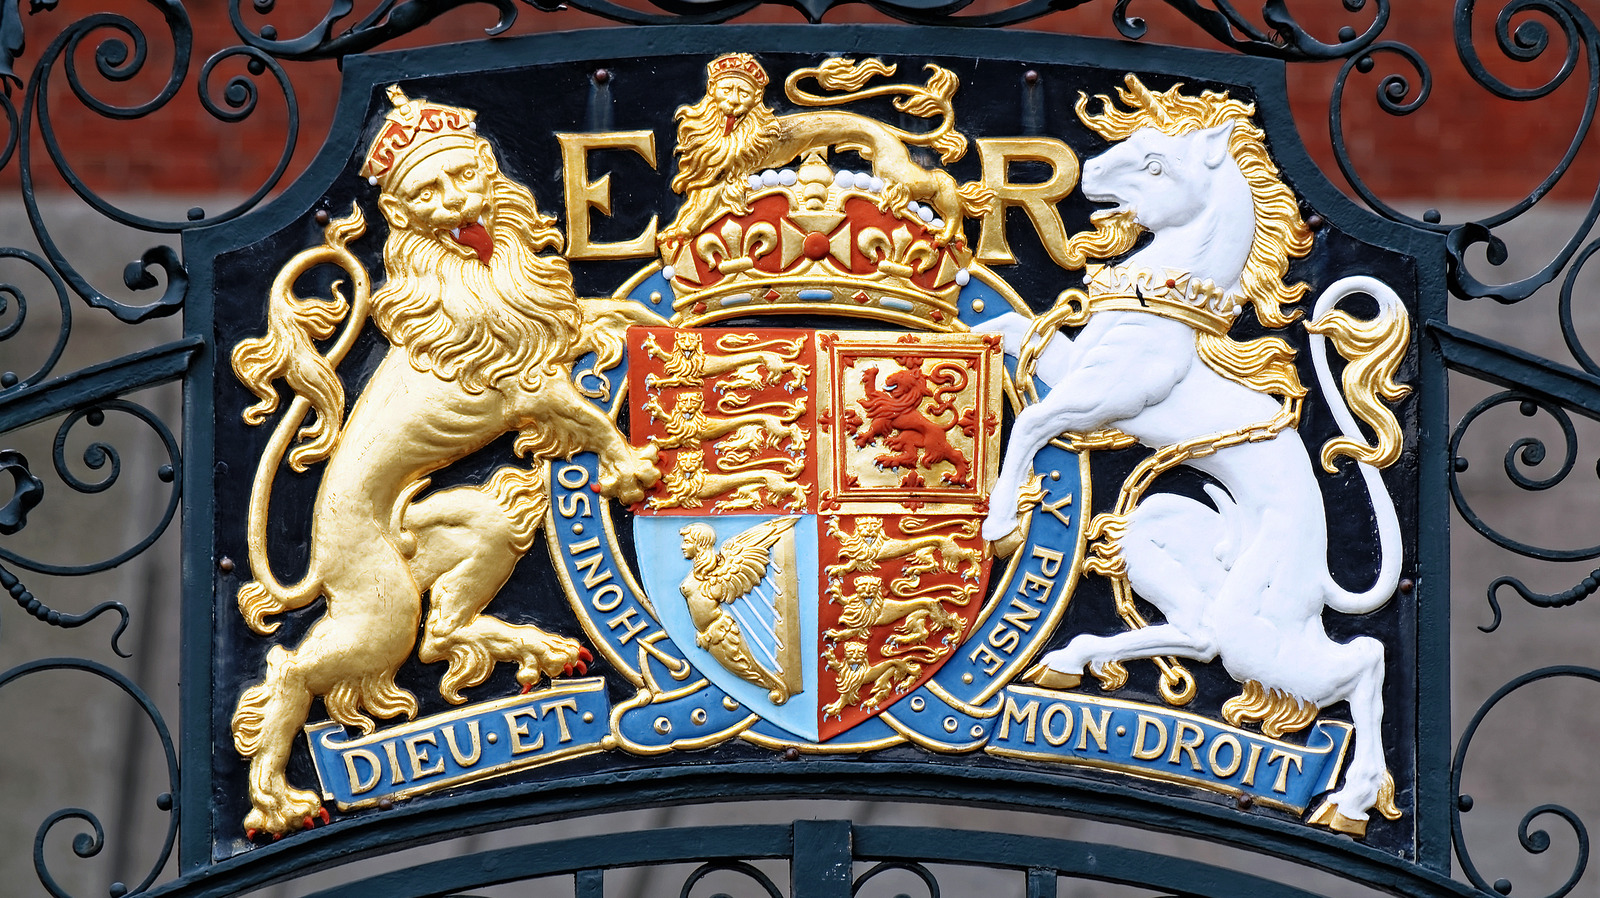 english royal coat of arms